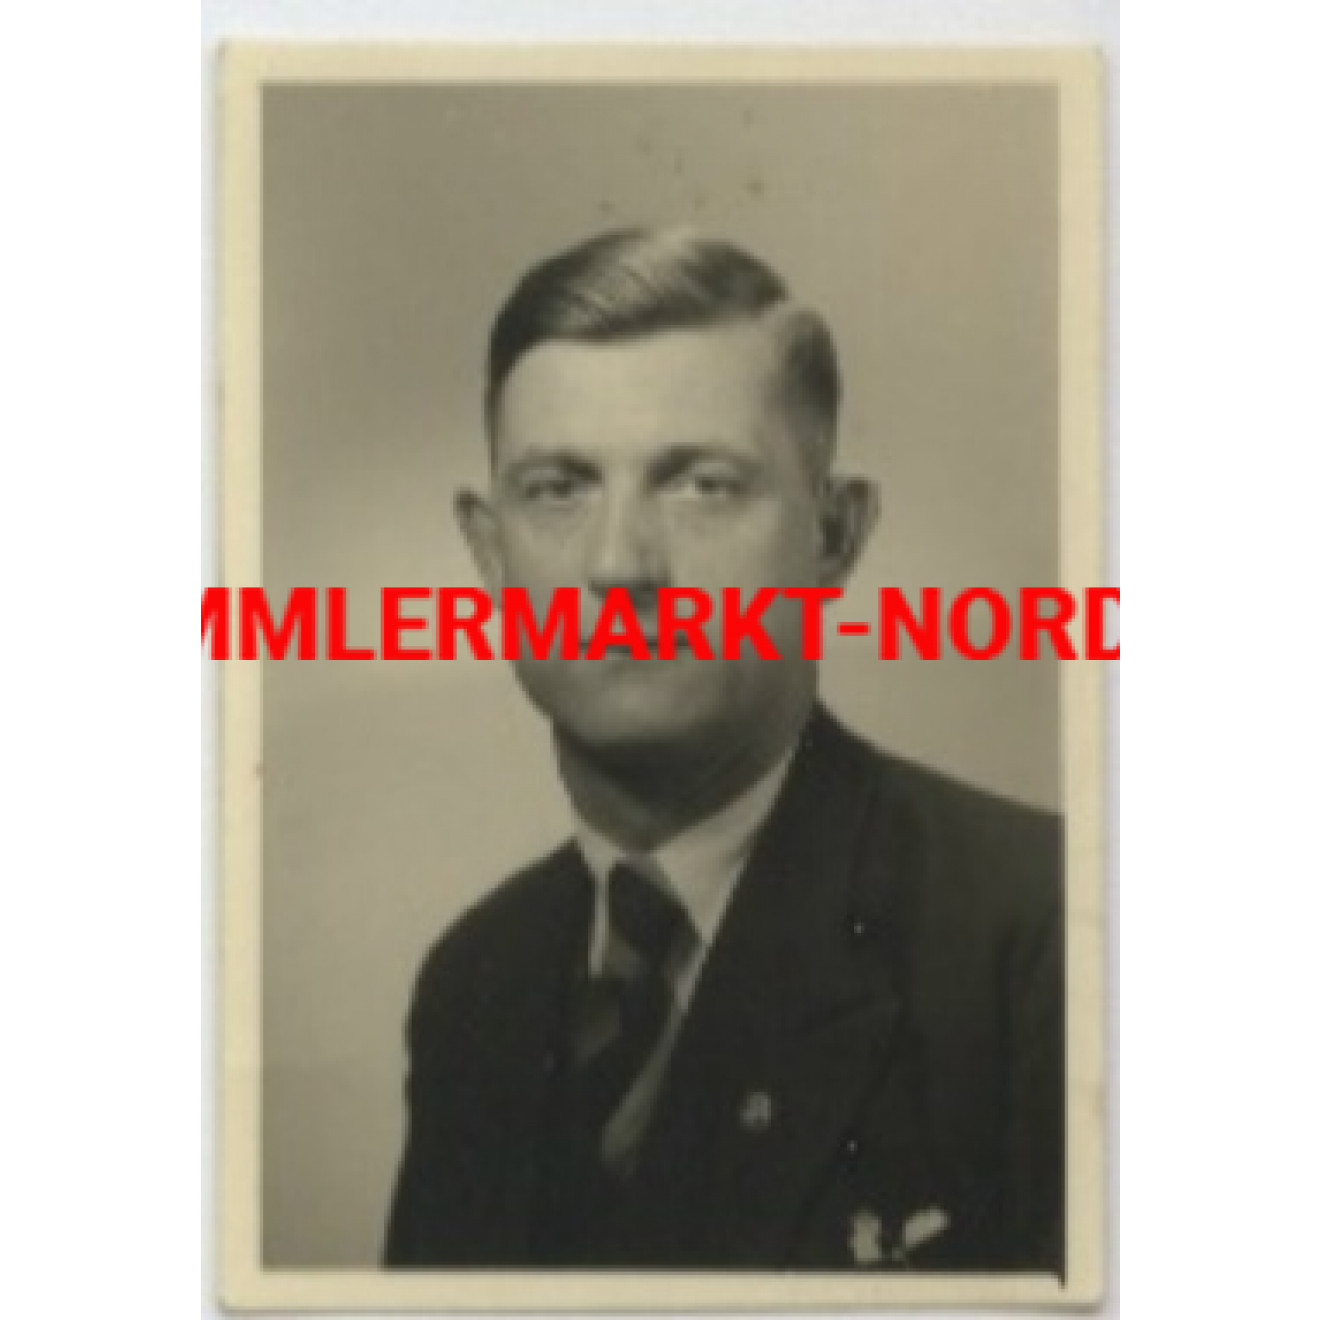 Man with Deutschen Arbeitsfront badge